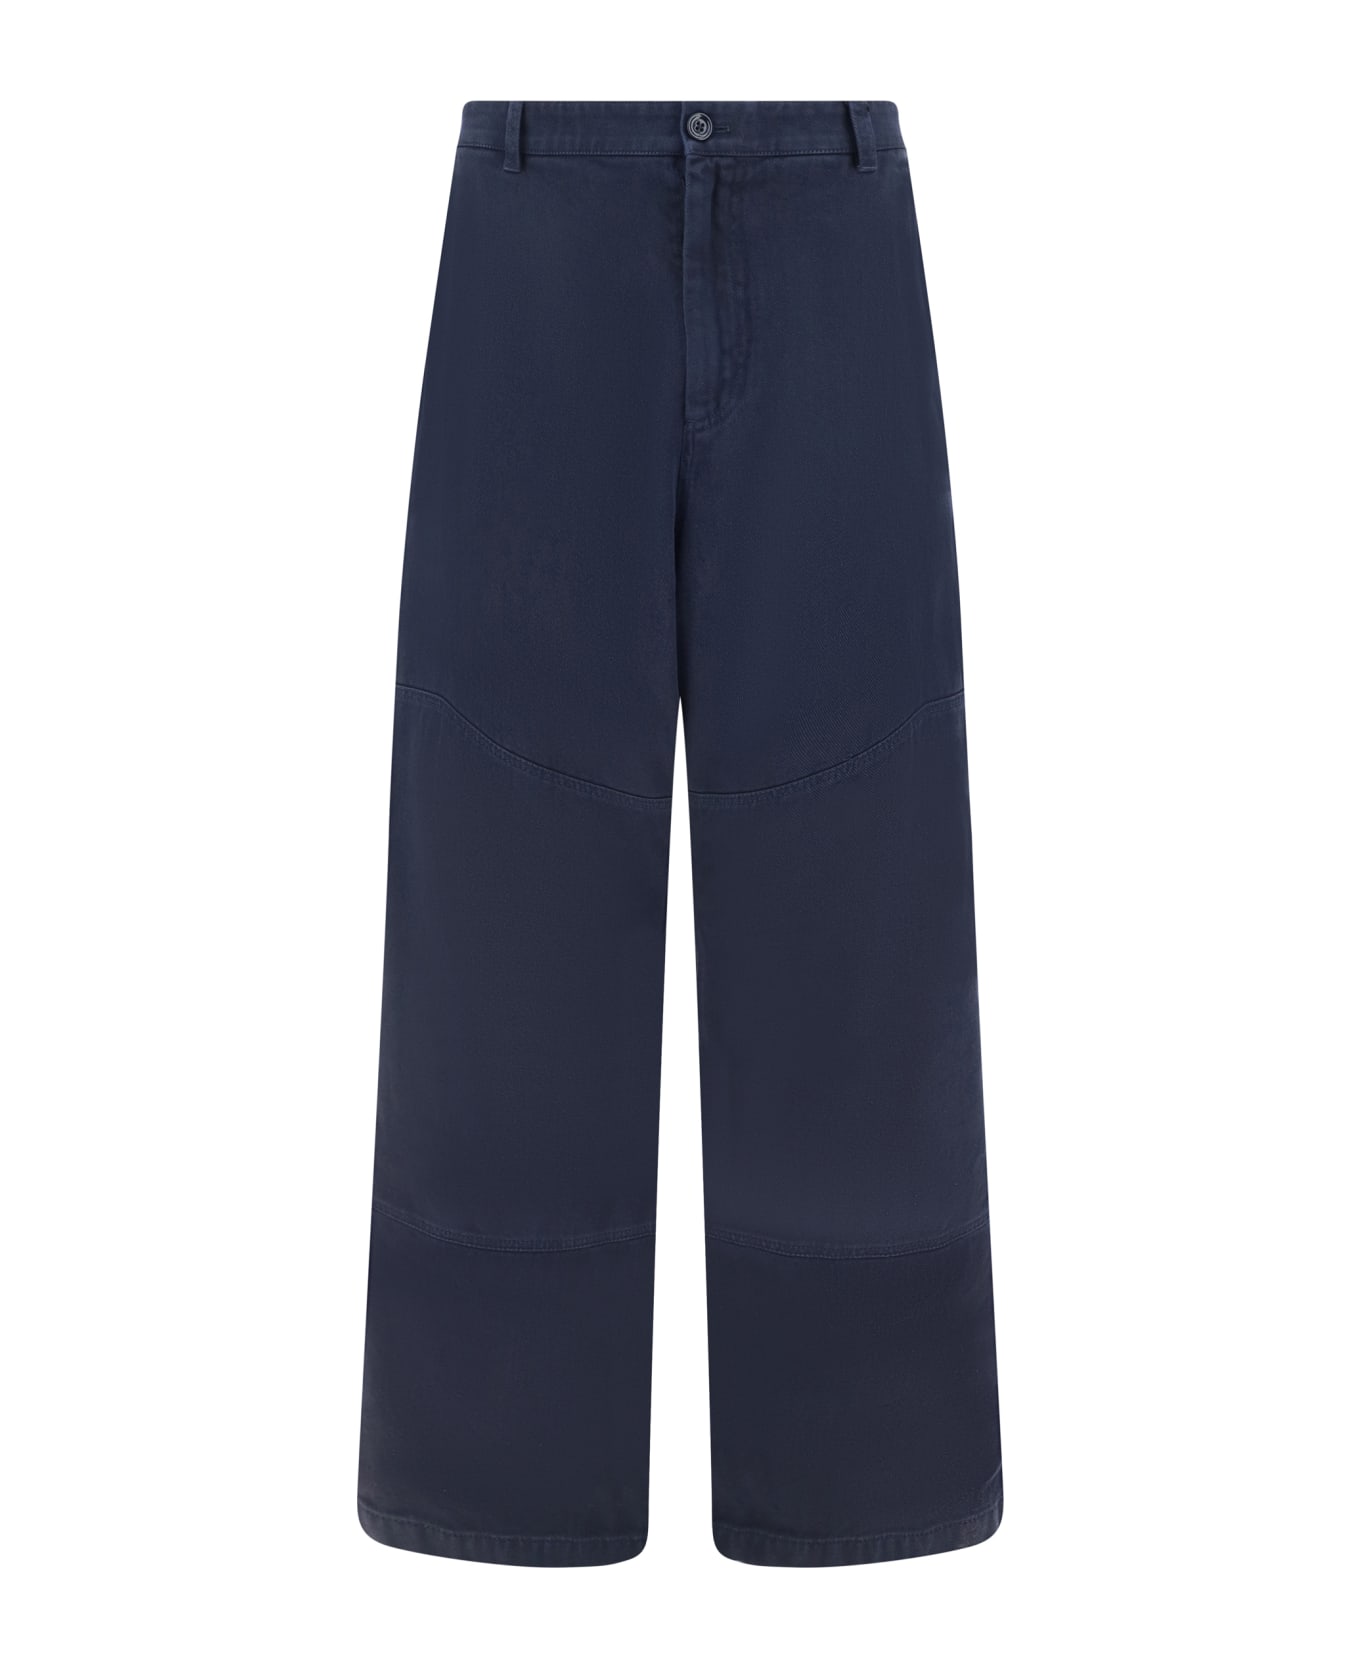 Dolce & Gabbana Cargo Pants - Dolce & Gabbana Kids camouflage-print cargo shorts